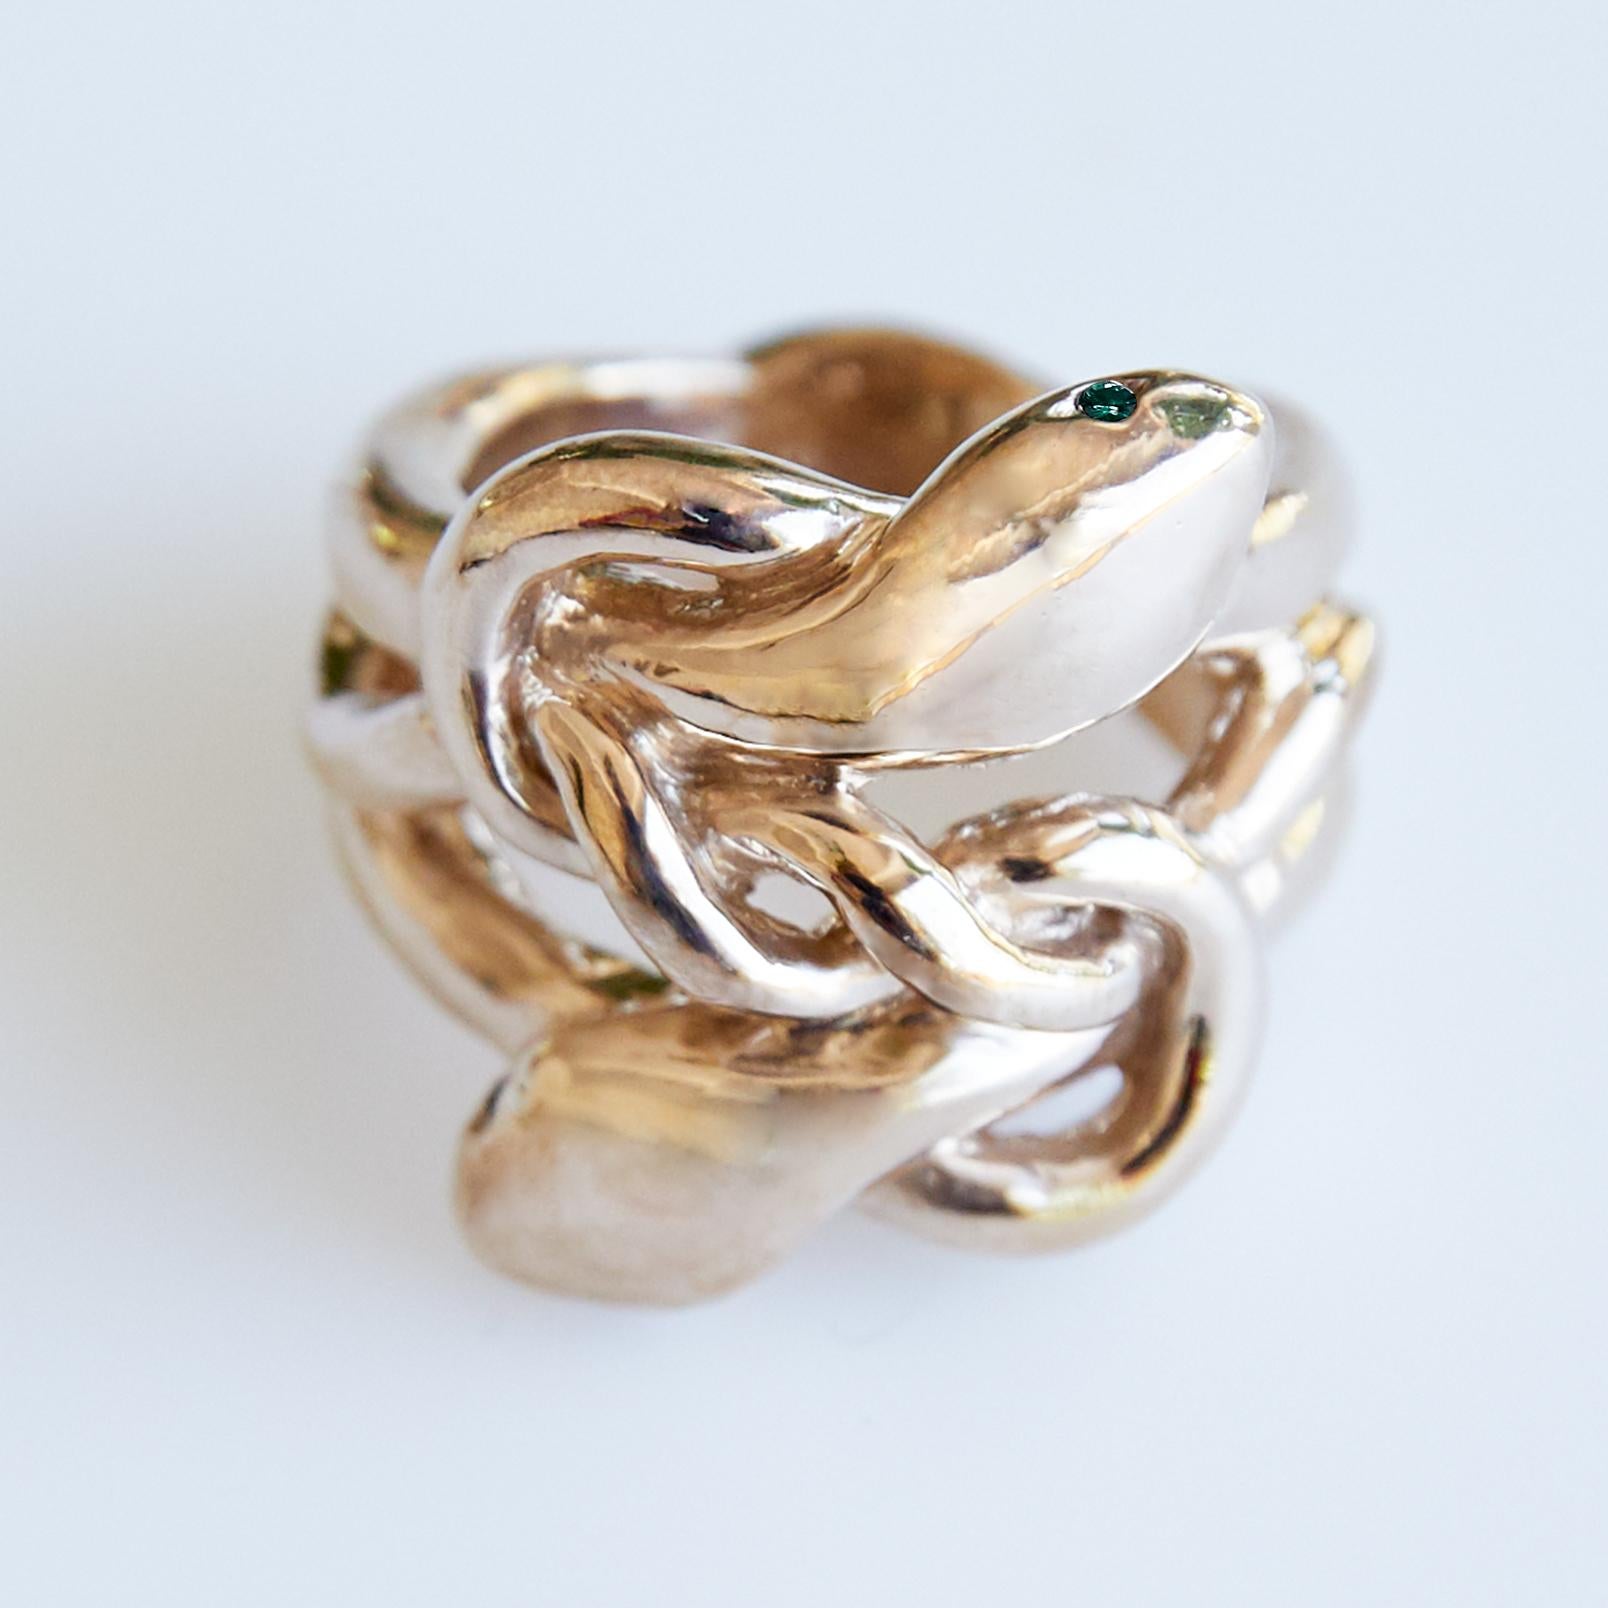 Smaragd Gold Schlange Ring viktorianischen Stil J Dauphin
J DAUPHIN 